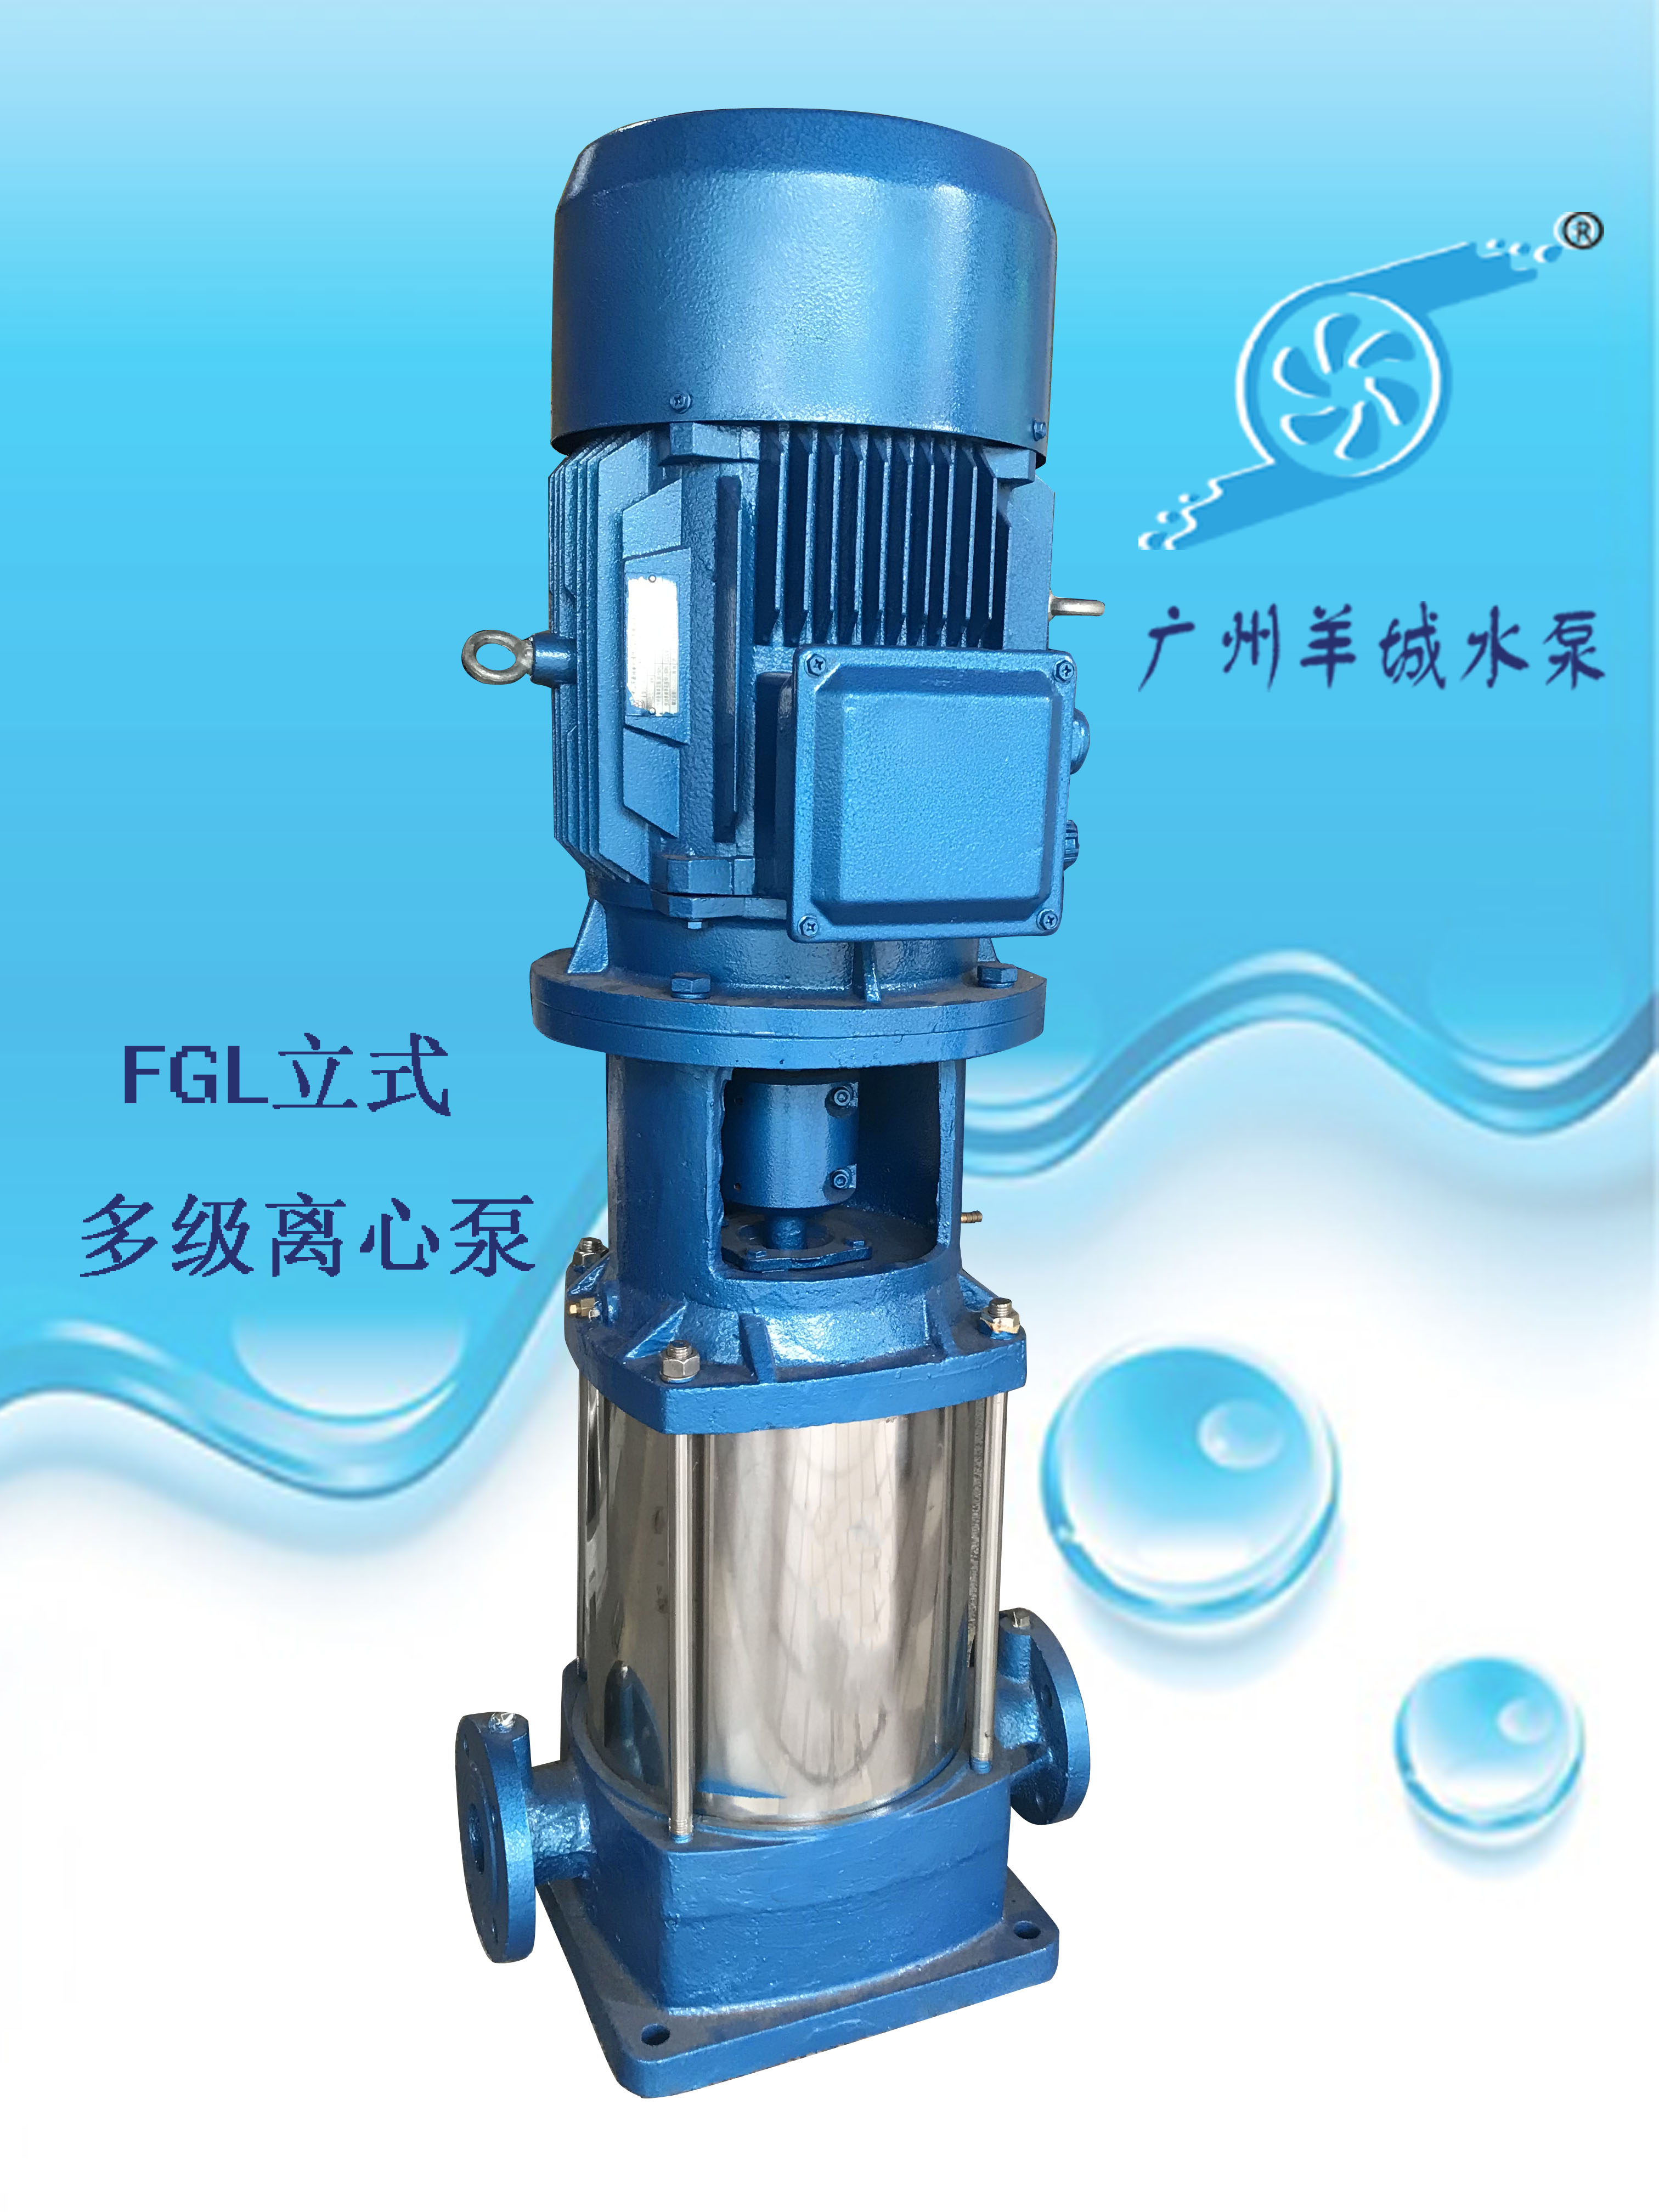  羊城水泵65FGL24-30*3A|羊城多级泵||羊城泵业|广州羊城水泵厂|珠海水泵厂